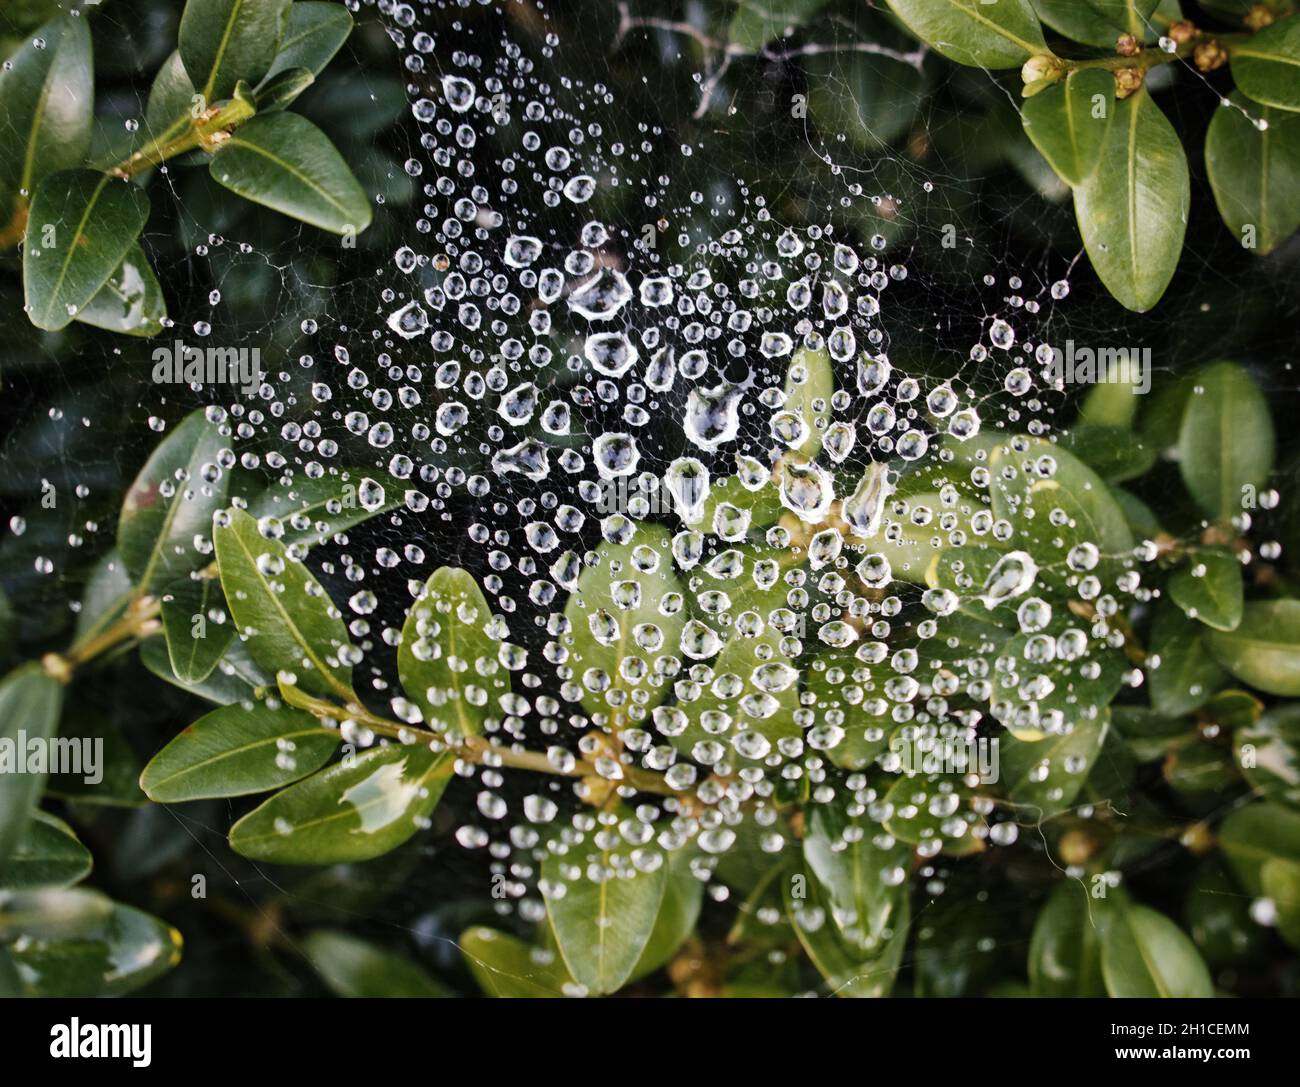 Ein natürliches Muster, das aus Tauftropfen auf einem Spinnennetz gebildet wird, das zwischen den Blättern einer Gartenpflanze gewebt ist. Stockfoto